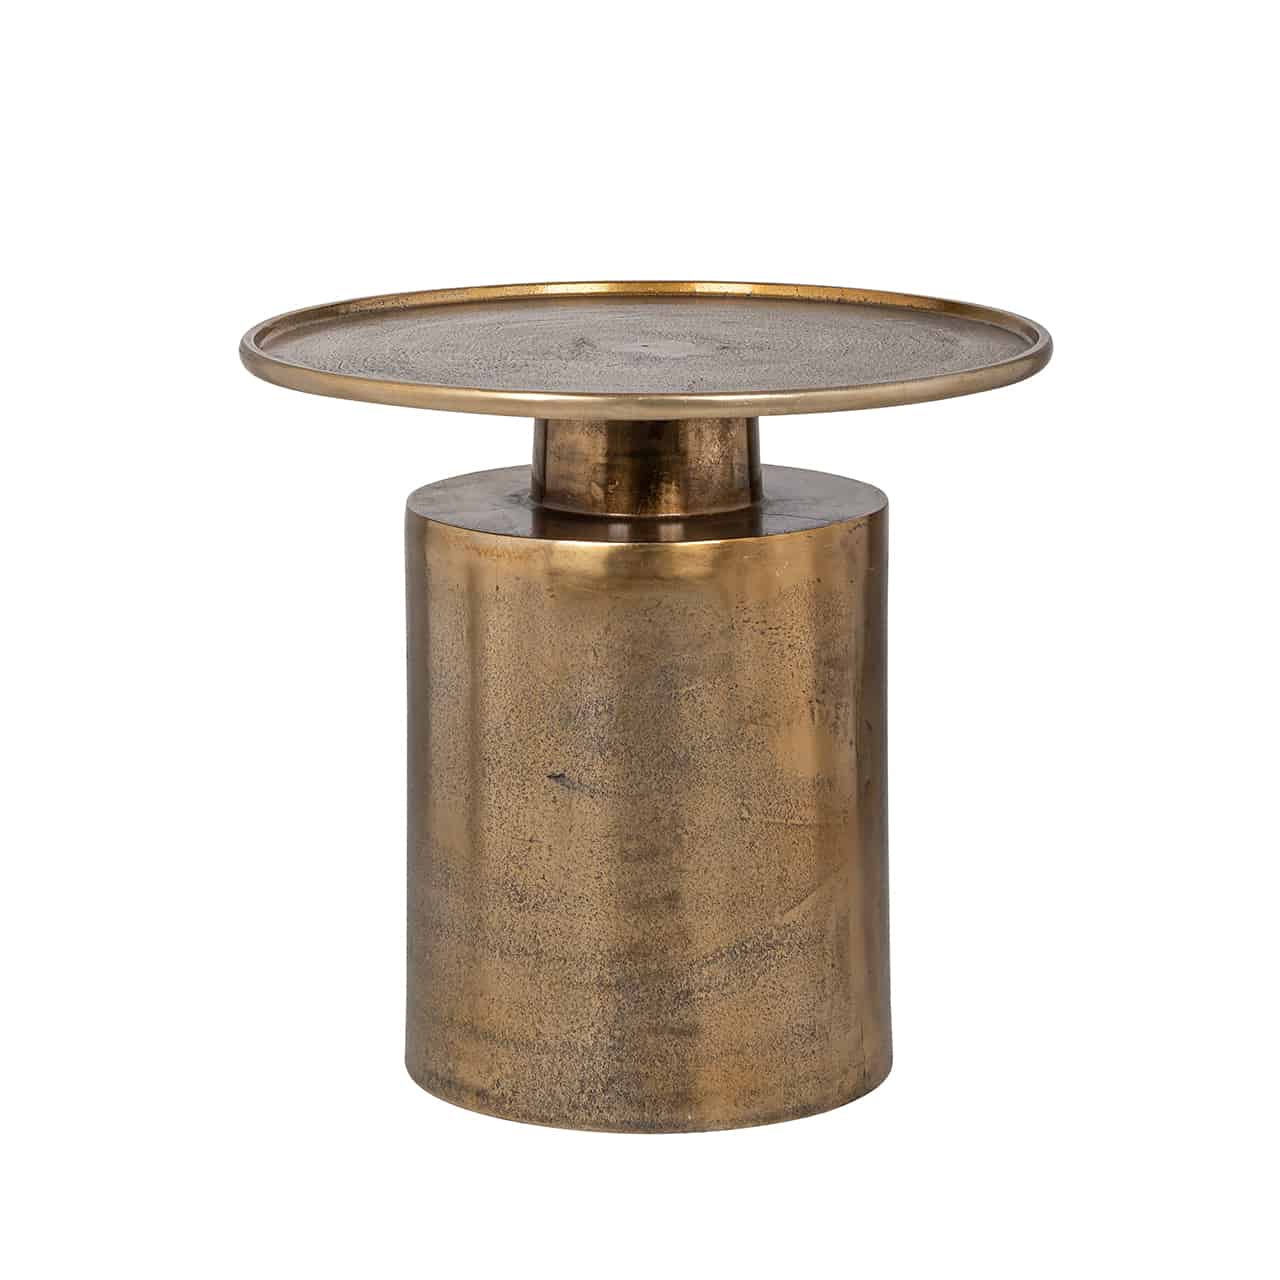 Beistelltisch gold gebürstet, bestehend aus einem zylinderförmigen Fuß, darauf ein kleiner runder Sockel, mit einer runden Tischplatte mit kleinem Rand.